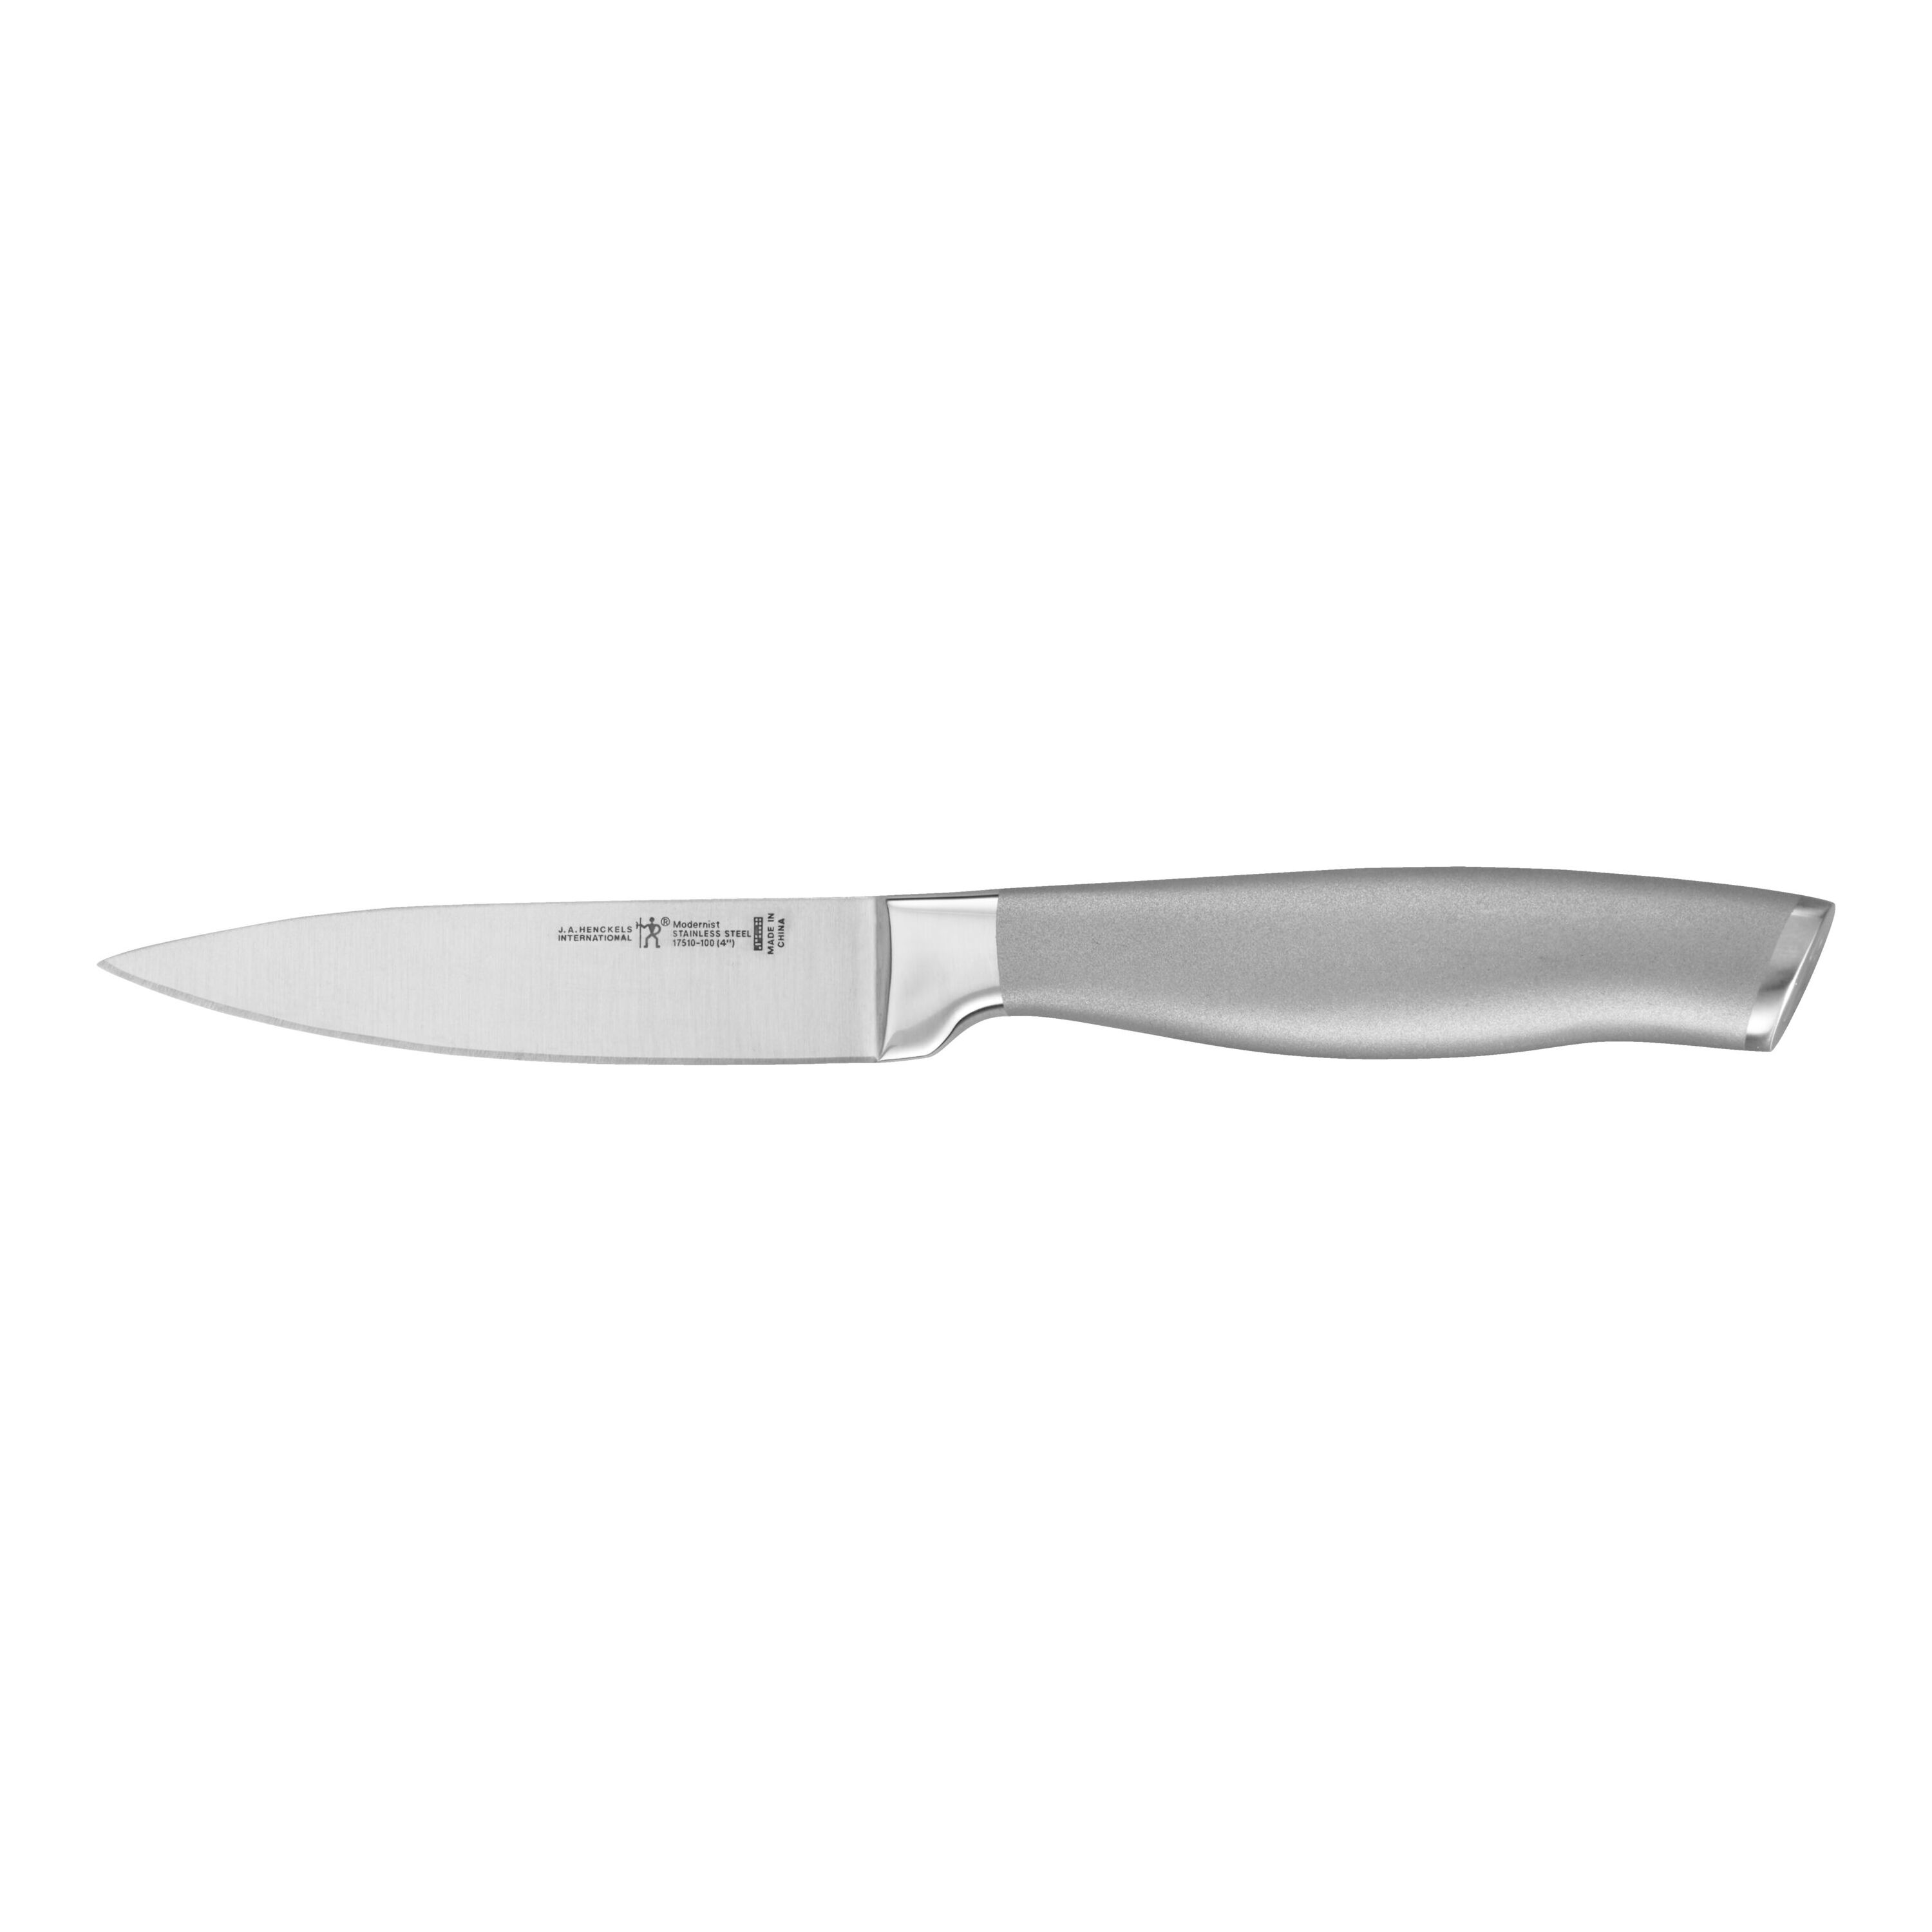 Henckels Dynamic 4-Inch Paring Knife